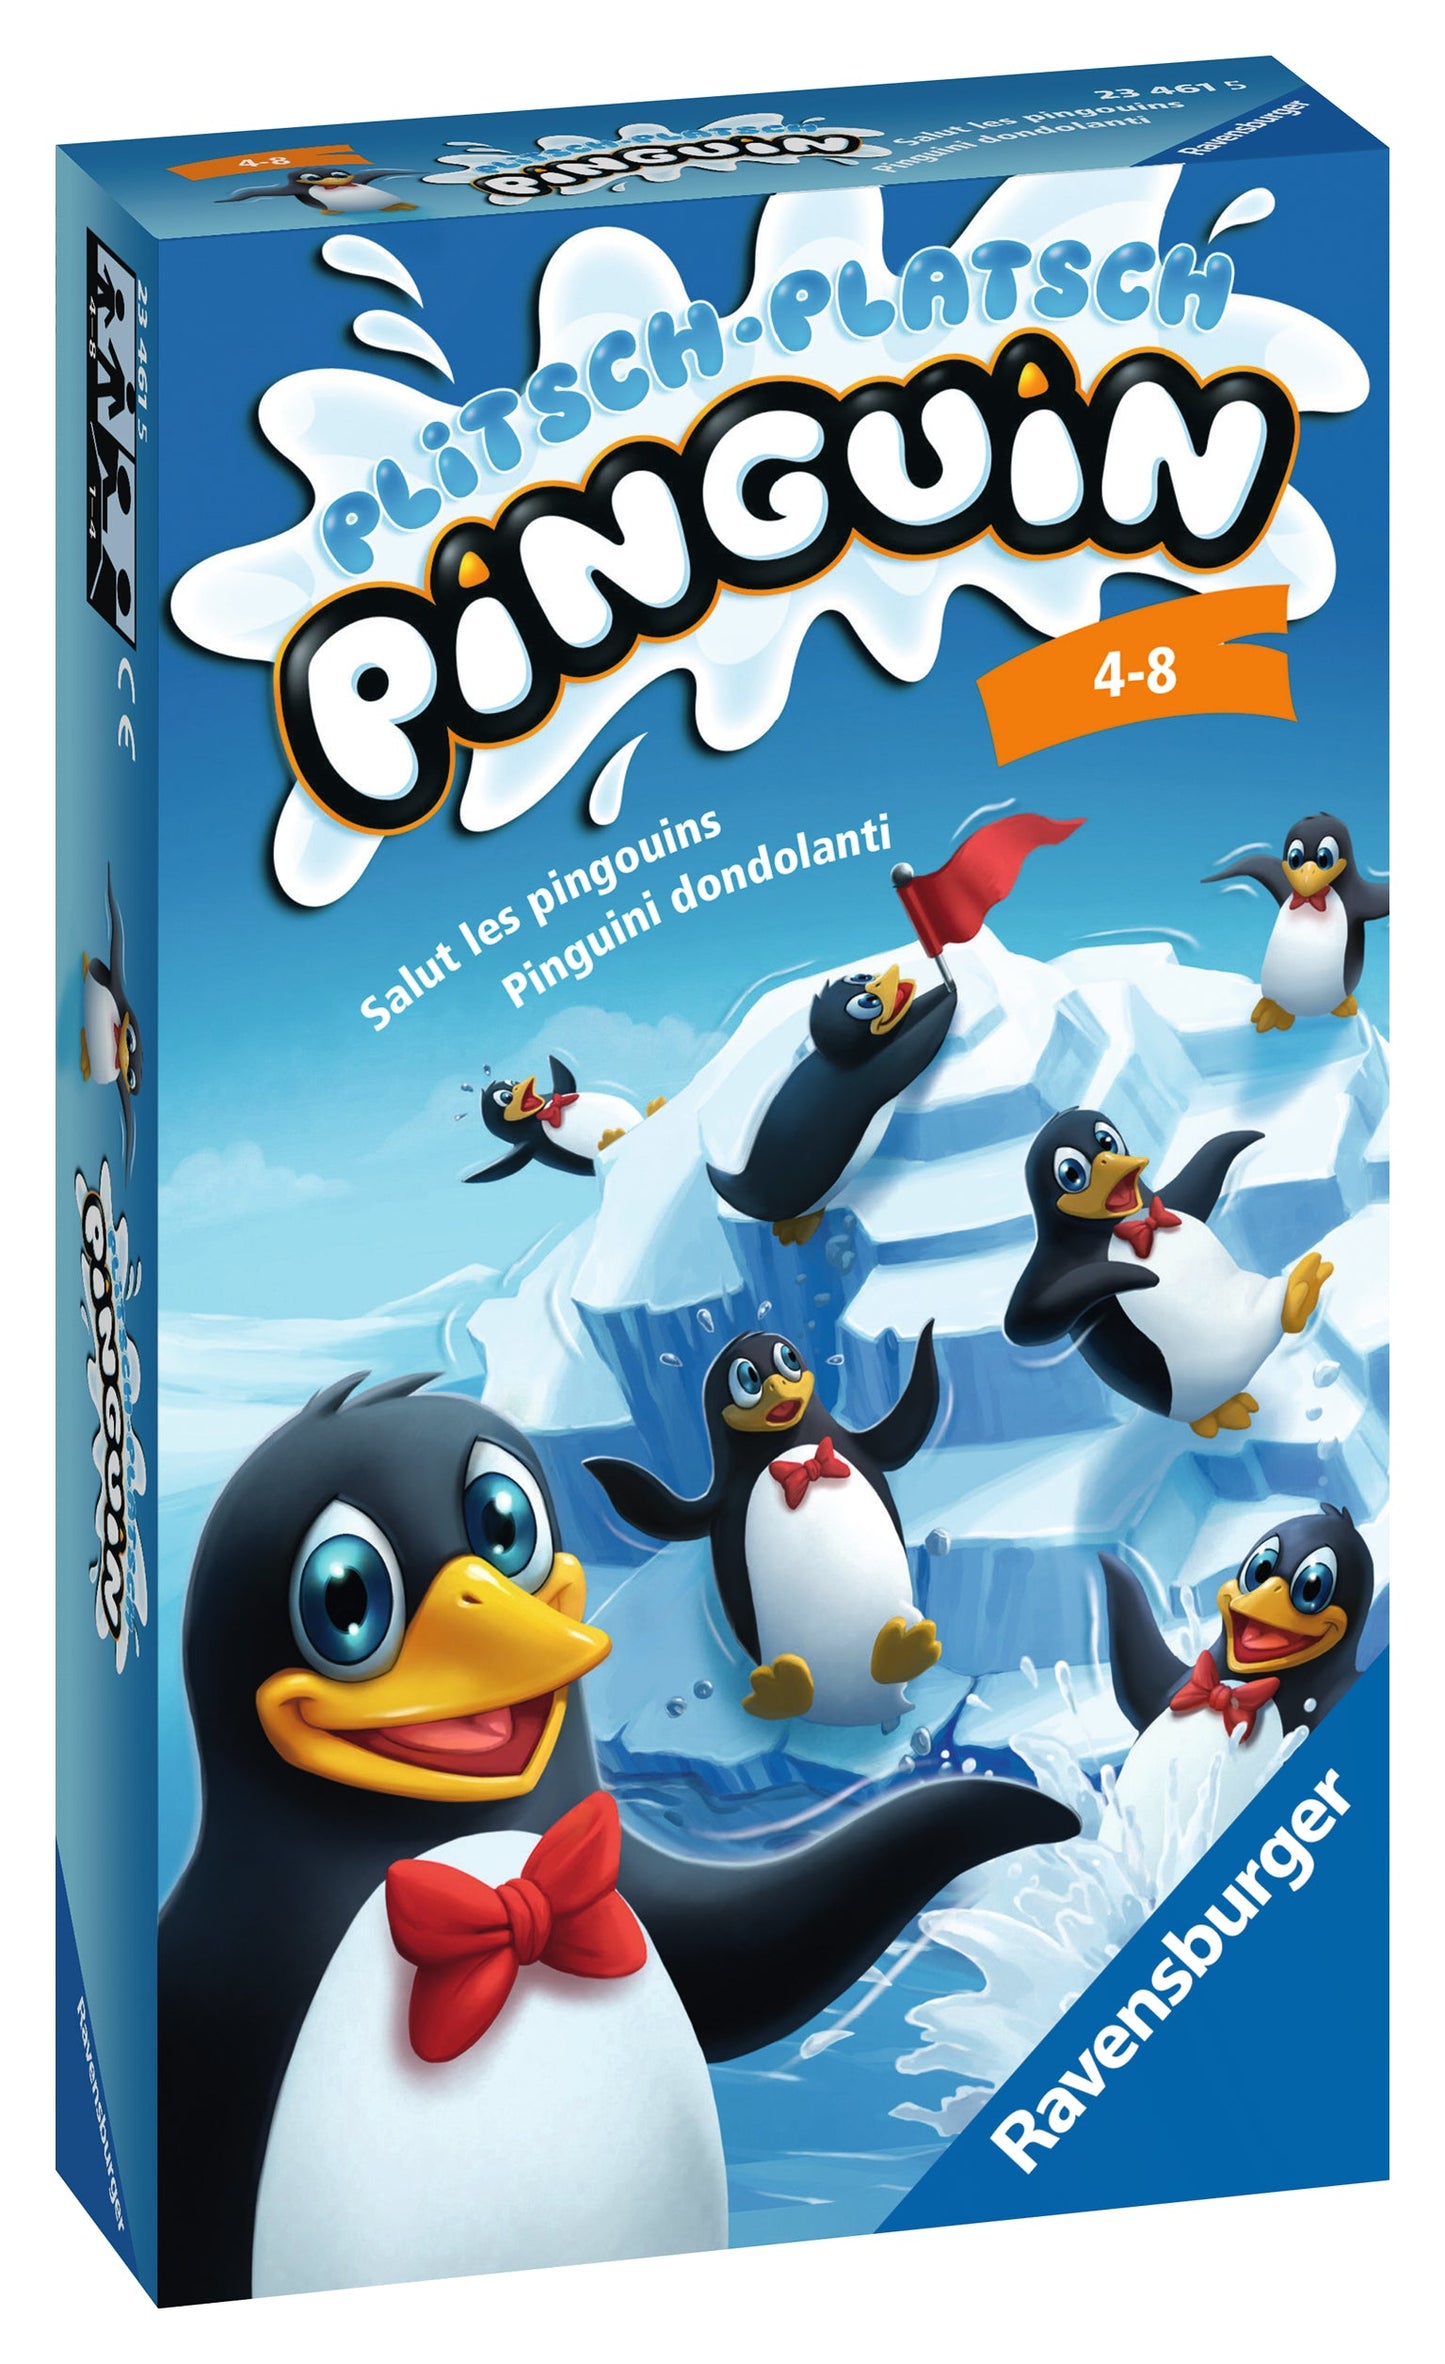 Plitsch-Platsch Pinguin Vanellas Spielewelt